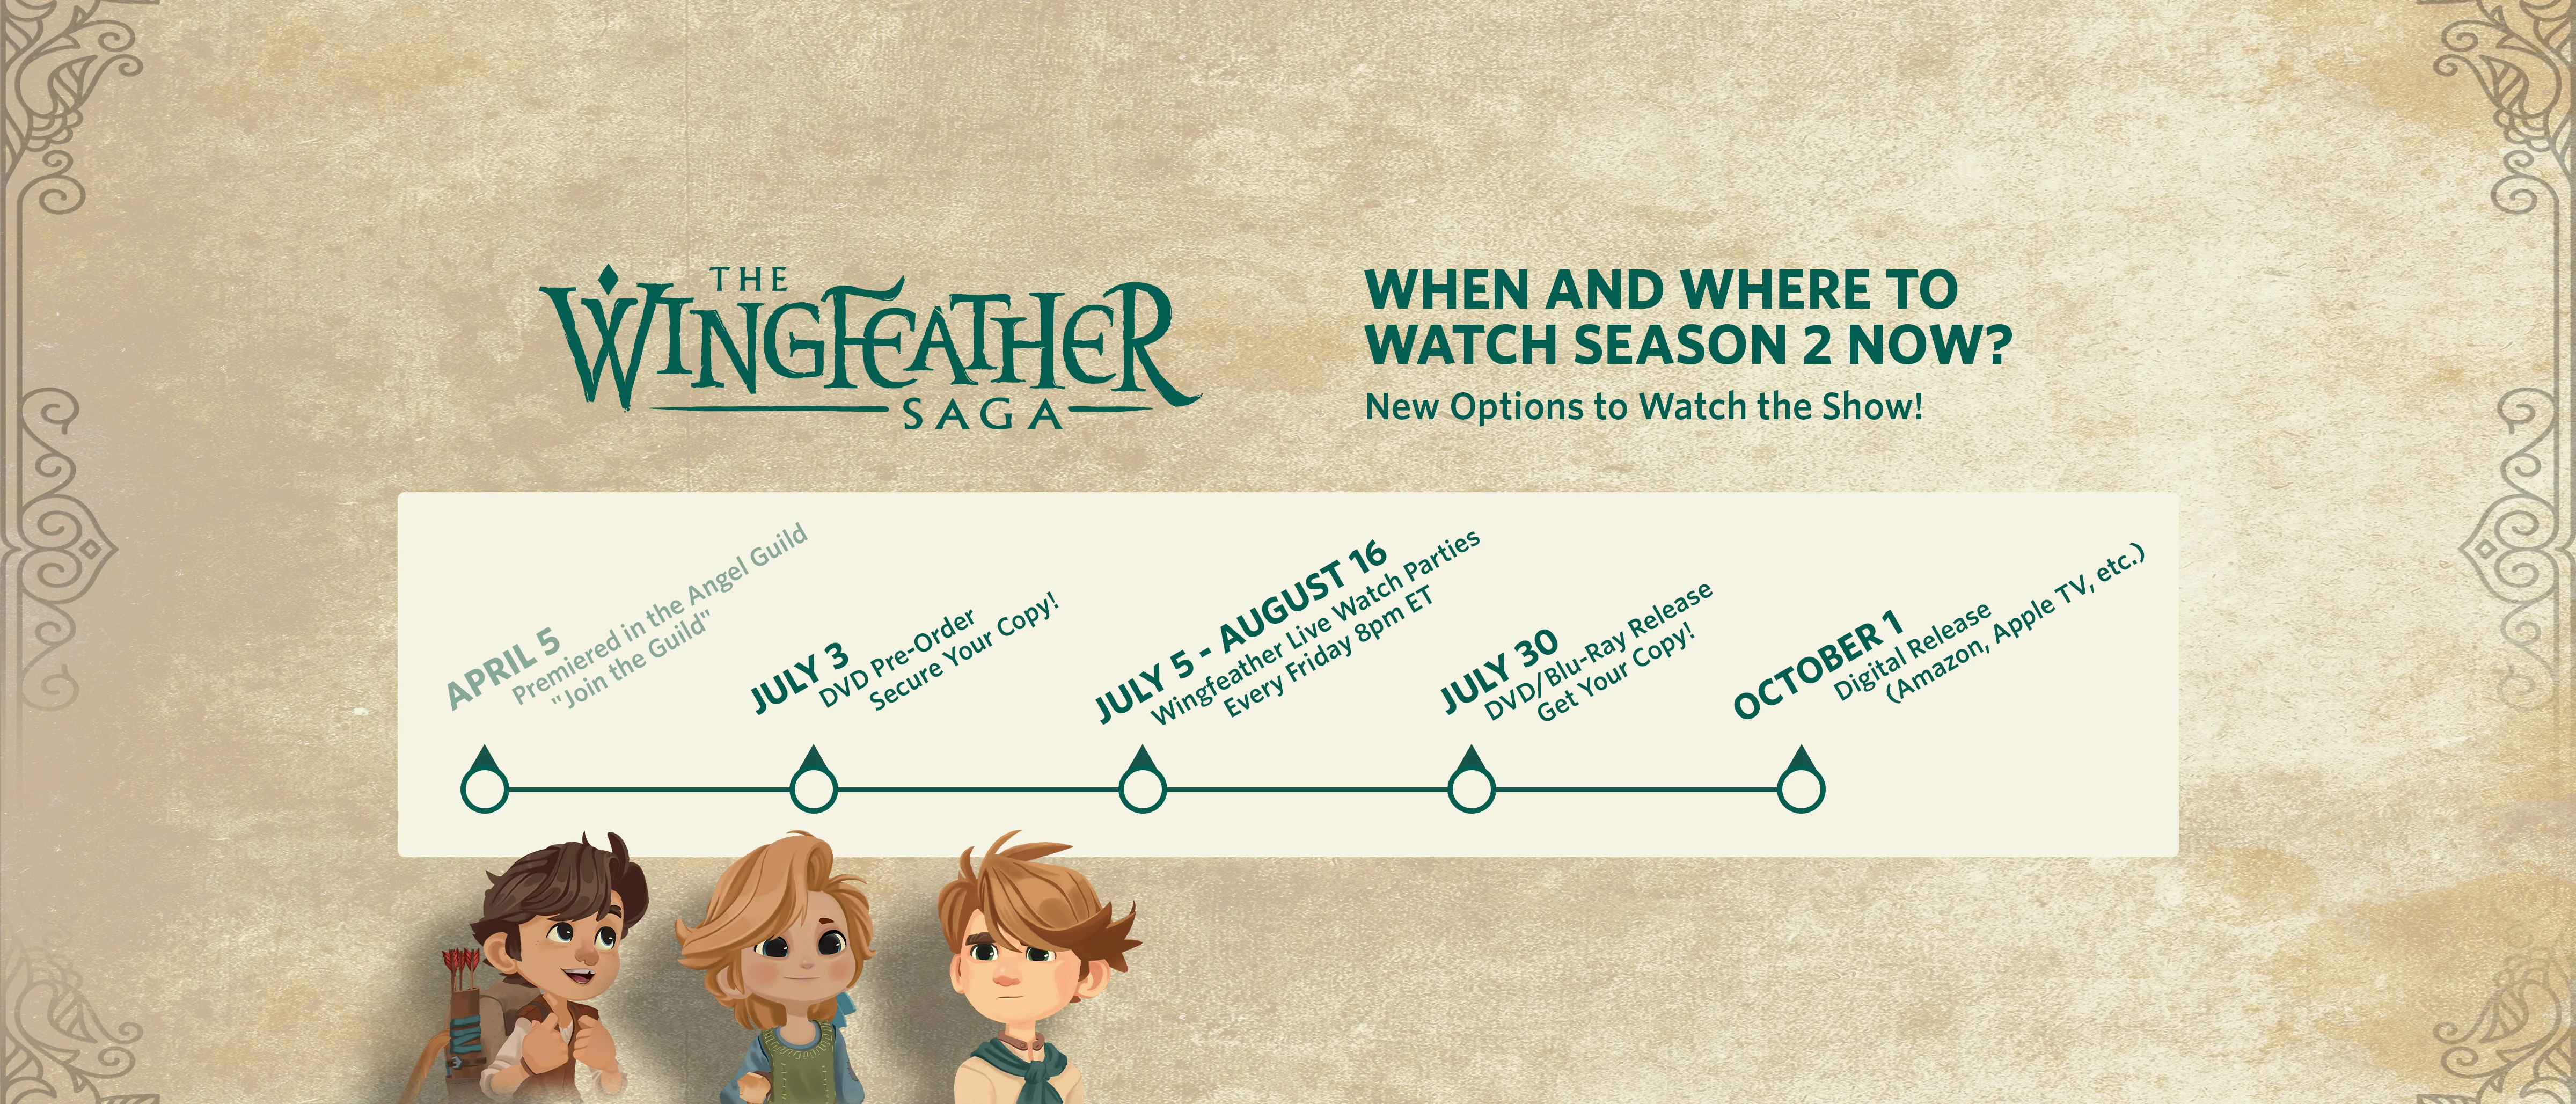 Timeline of Season 2 Release Dates